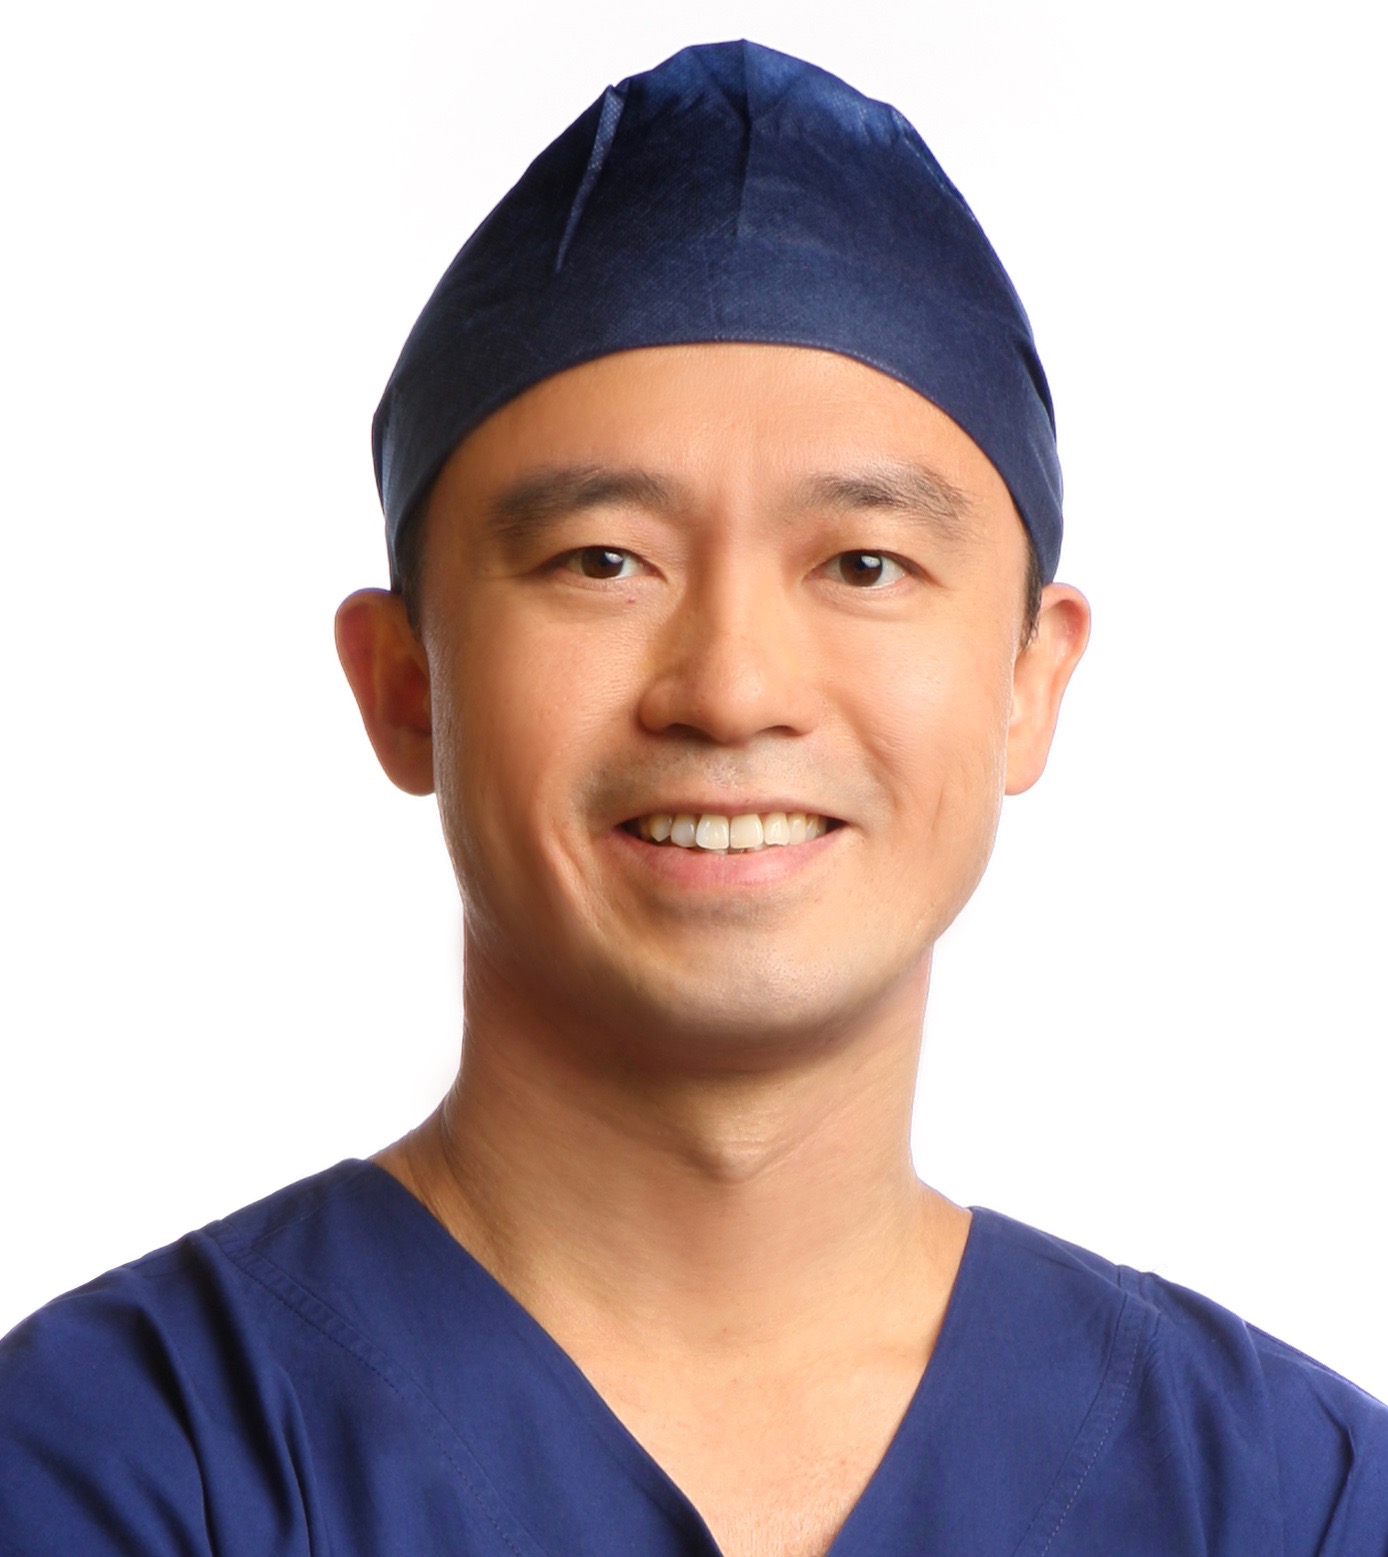 Photo of Surgeon